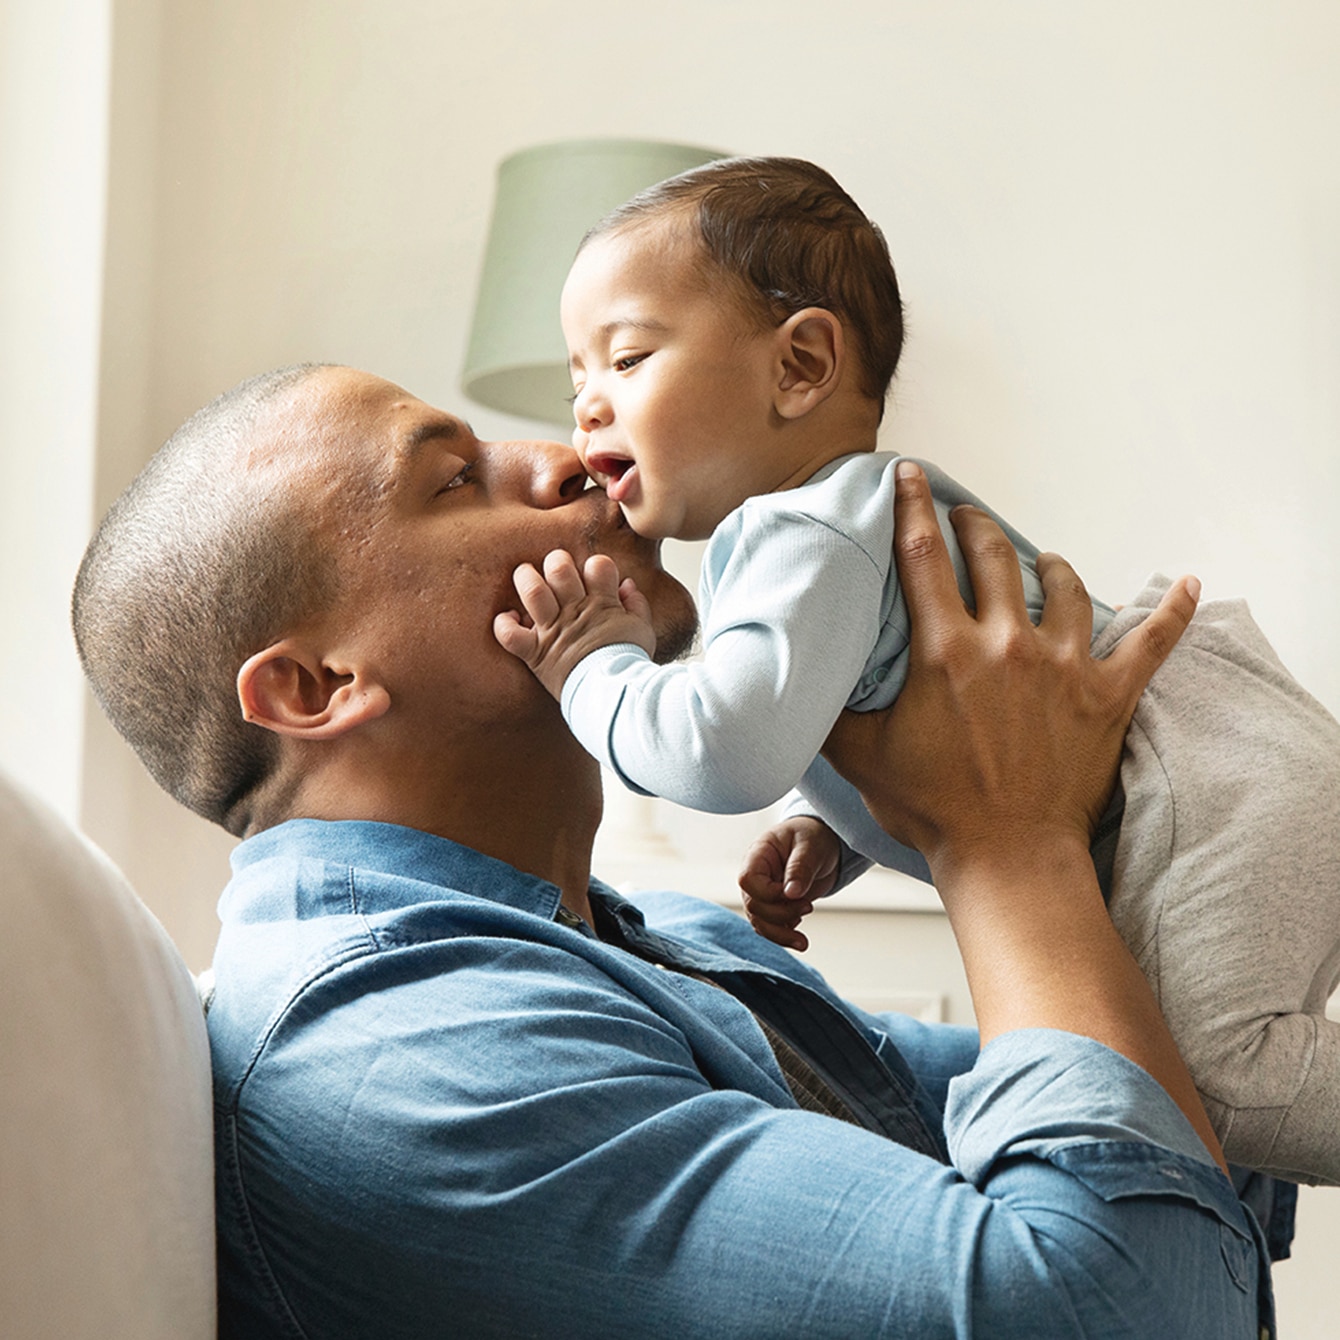 Padres primerizos: consejos para evitar el estrés y disfrutar a tu bebé, Shows Entre Amigas